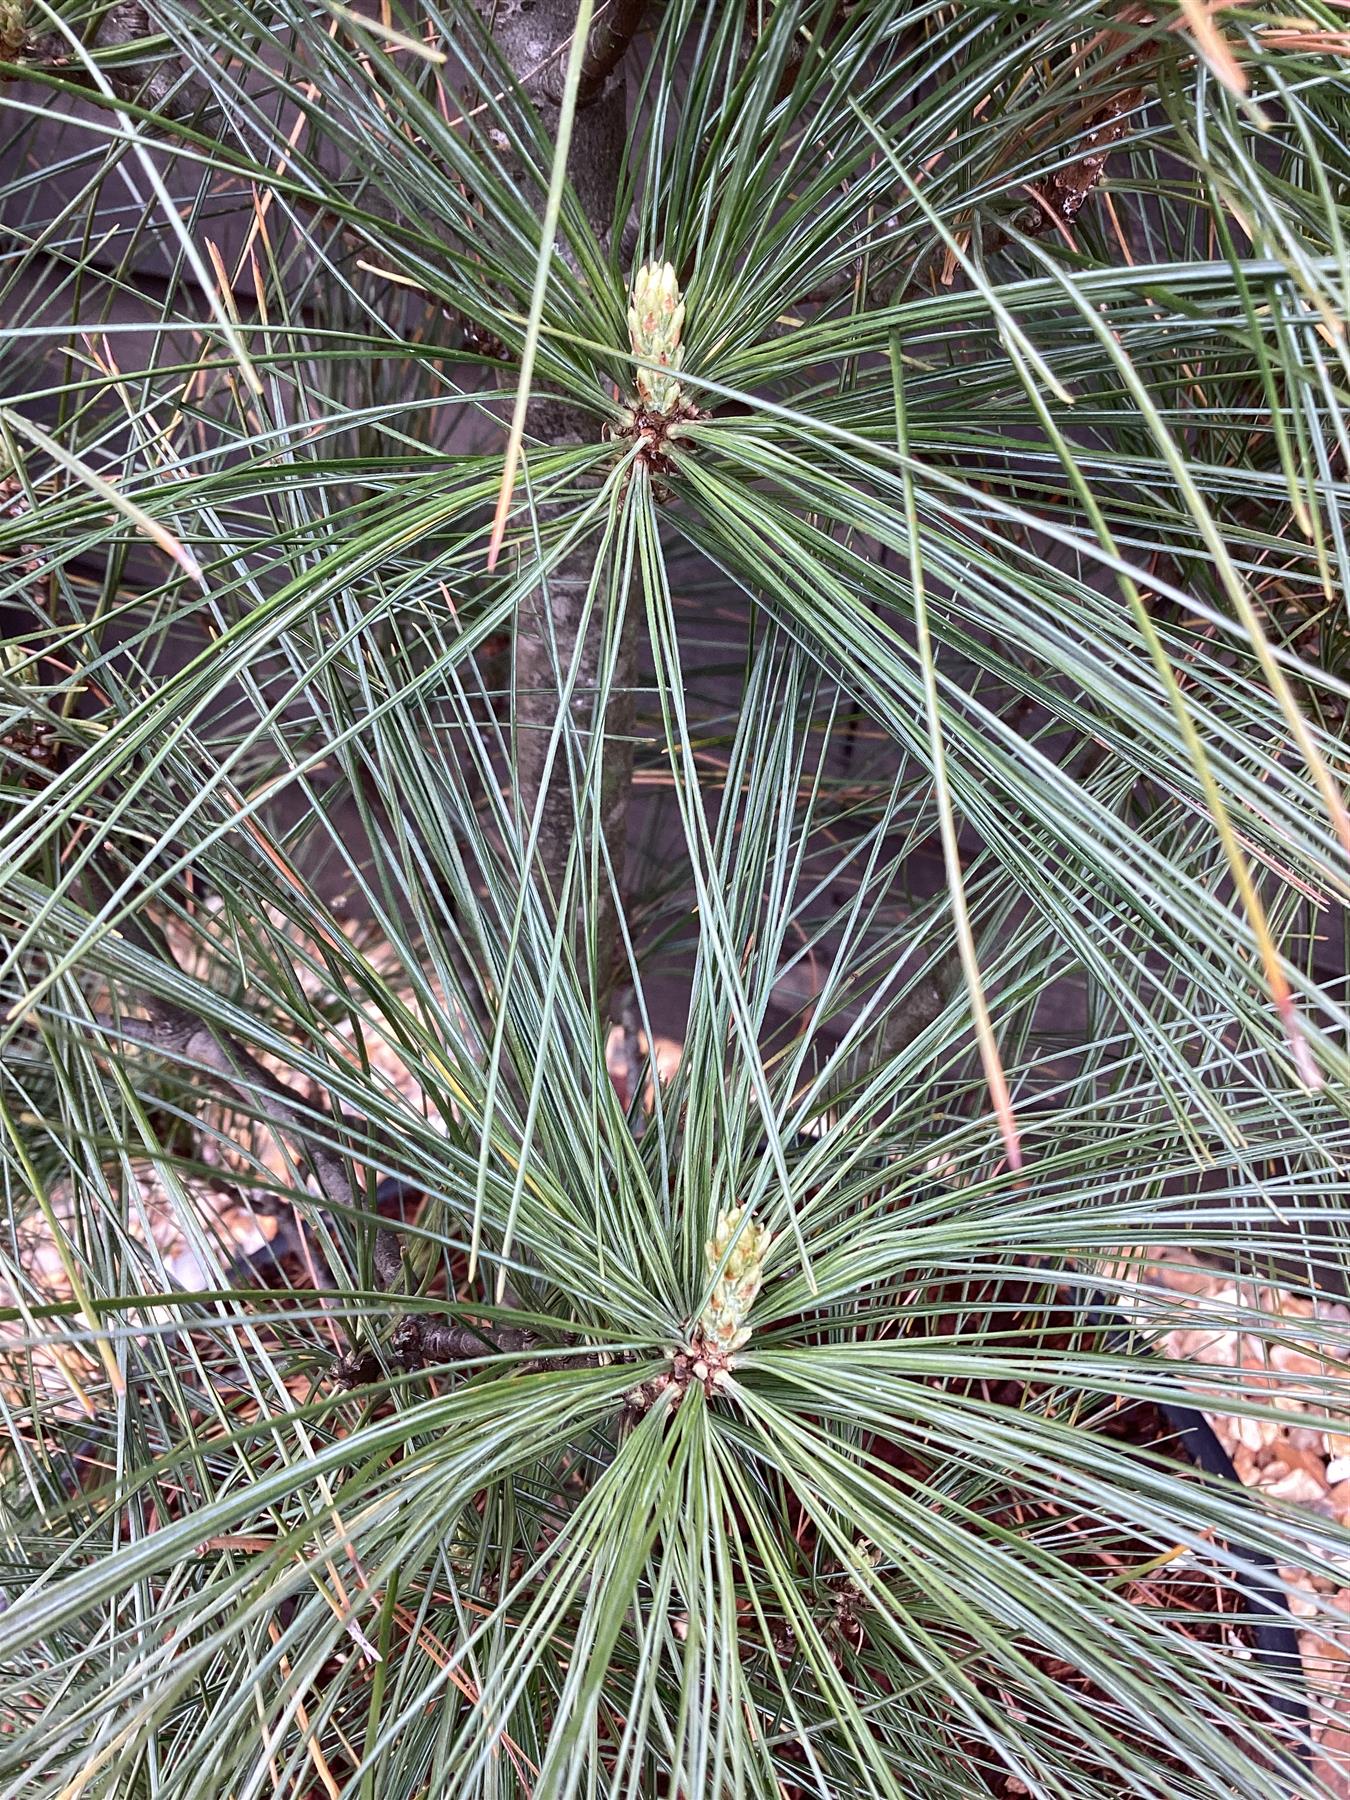 Pinus strobus 'Fastigiata' | Columnar Eastern White Pine - 100-120cm - 20lt